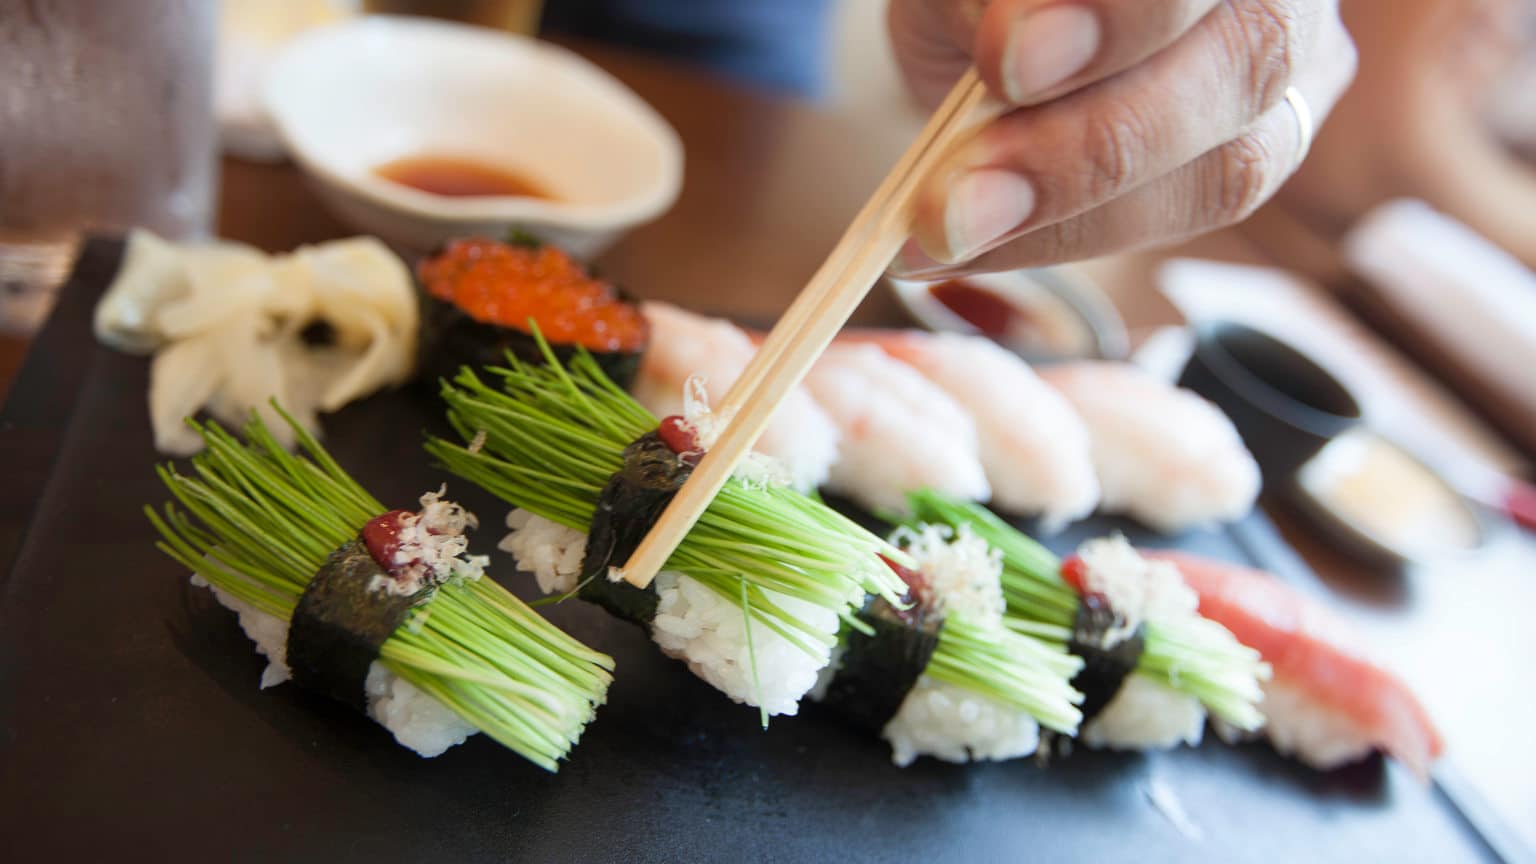 Japan-Tokyo-Food-Dining-Sushi-Restaurant-Shereen-Mroueh-2014-cropped